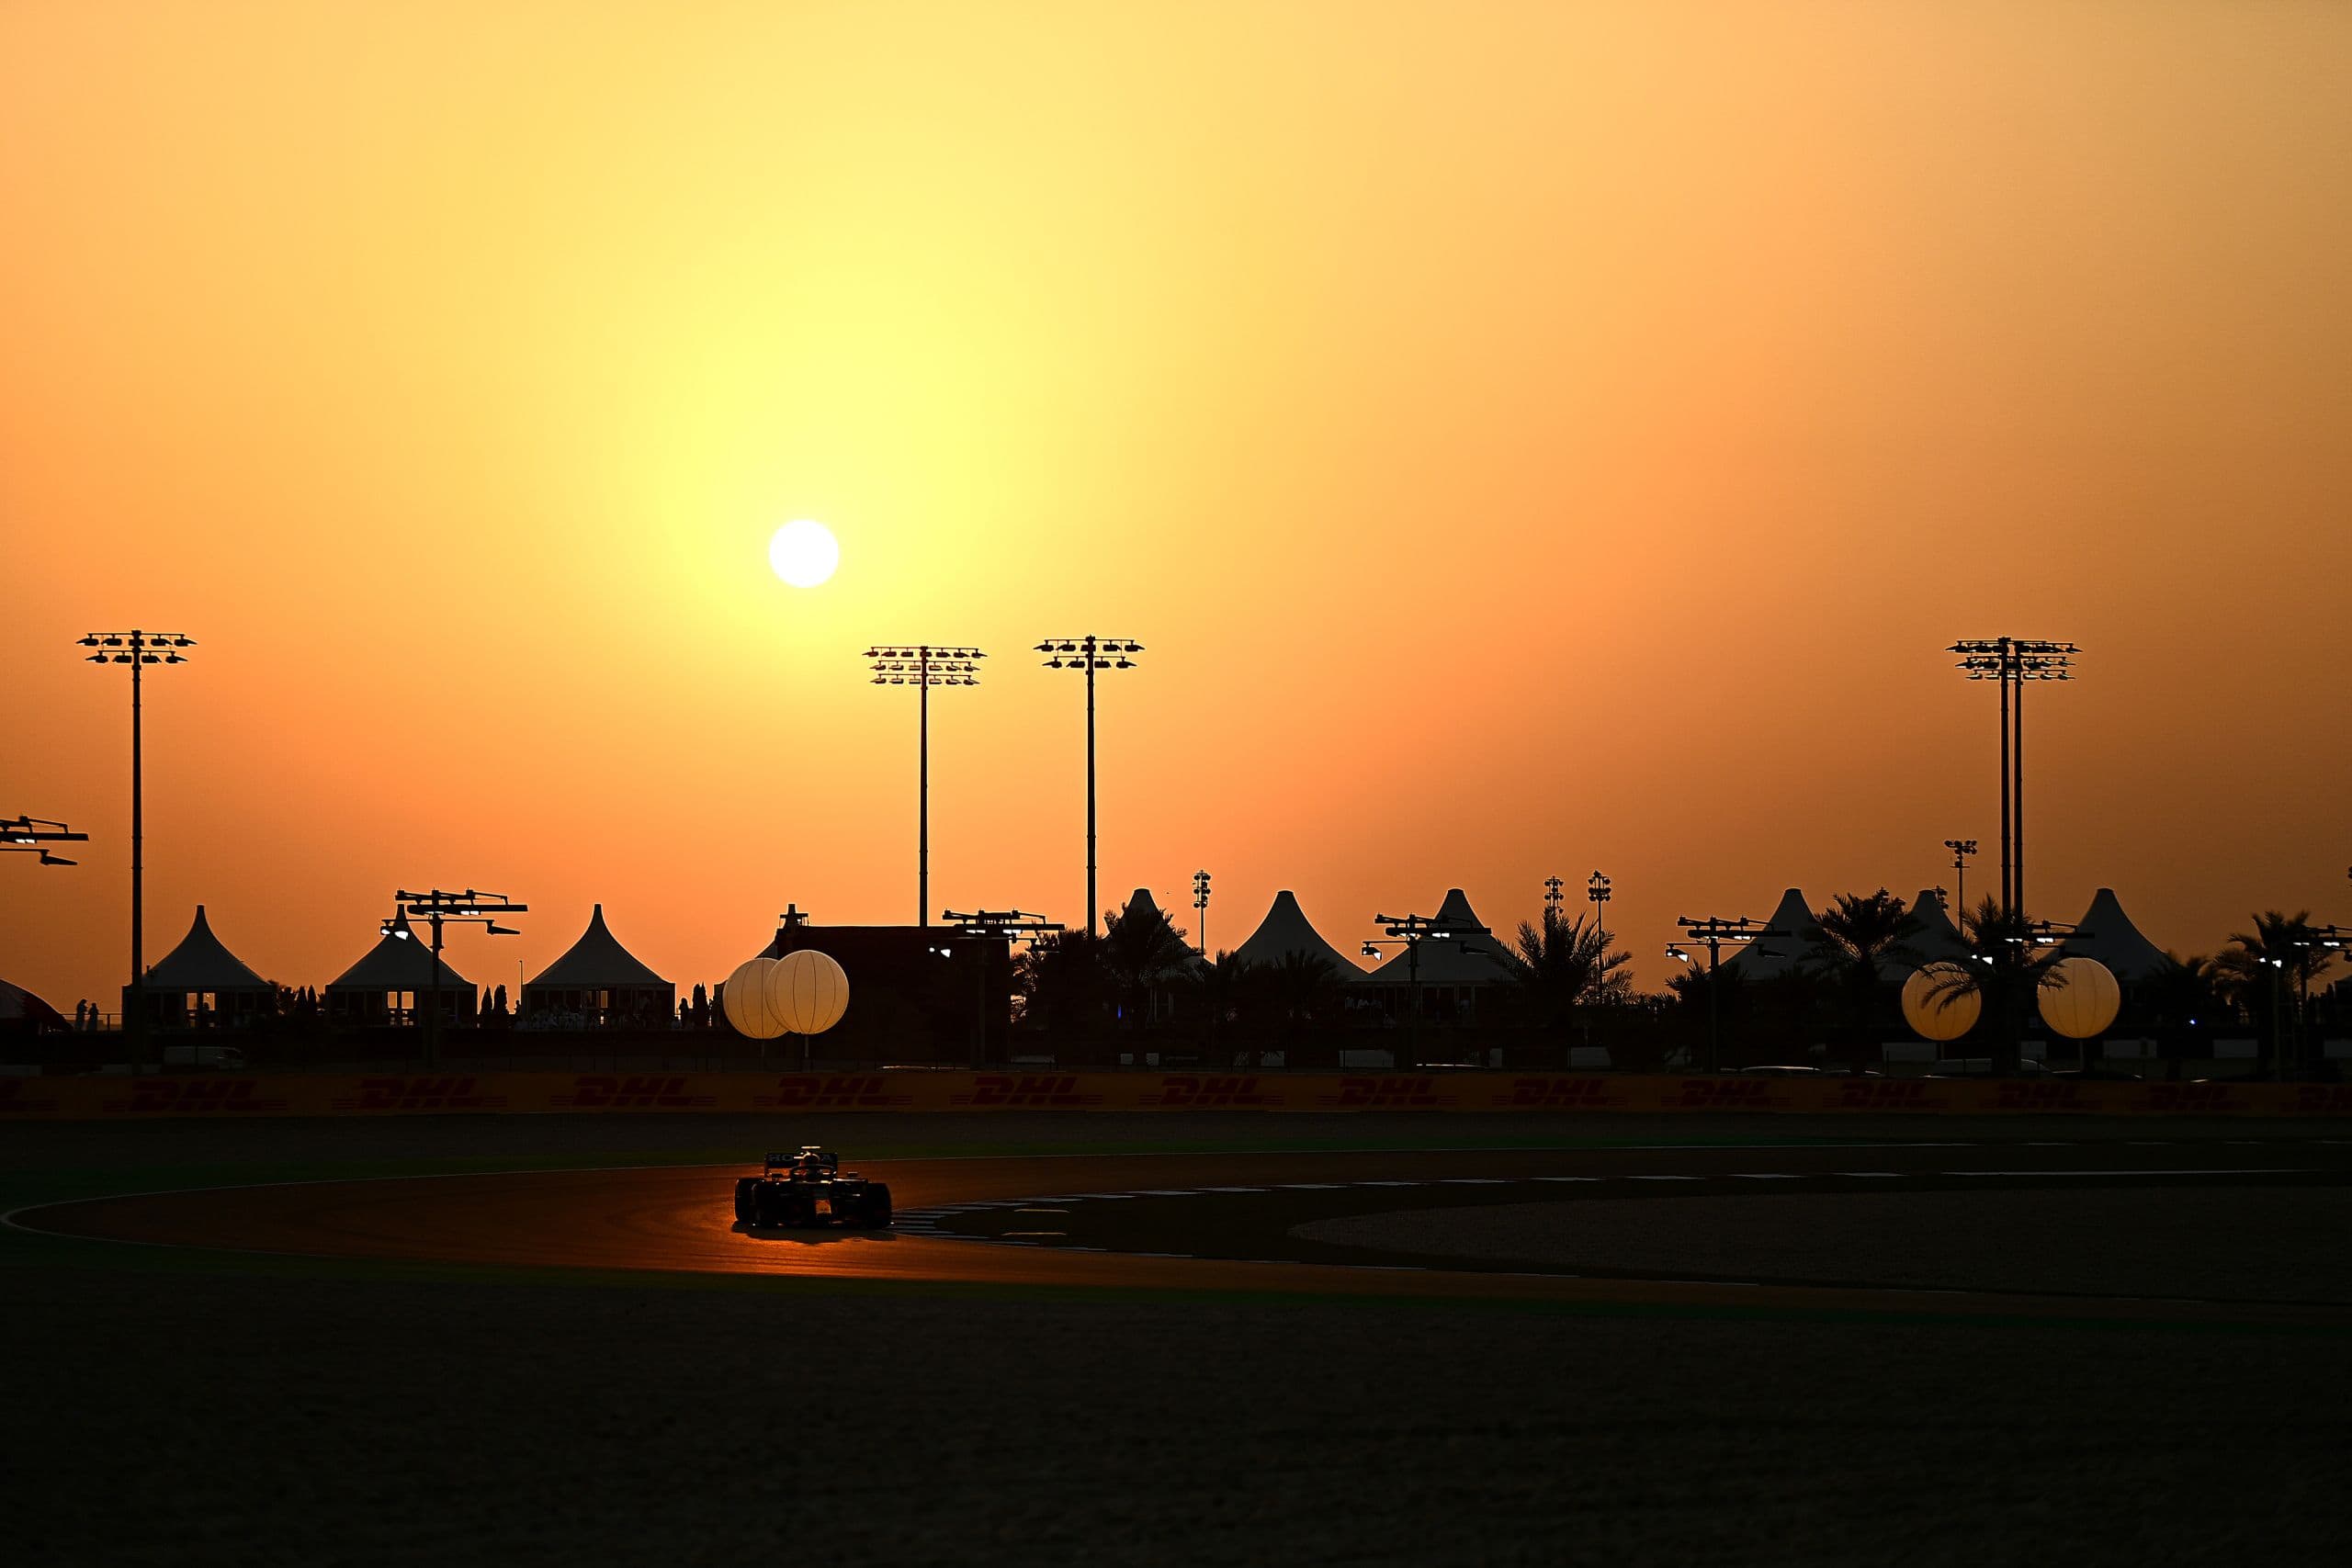 2021 Qatar Grand Prix